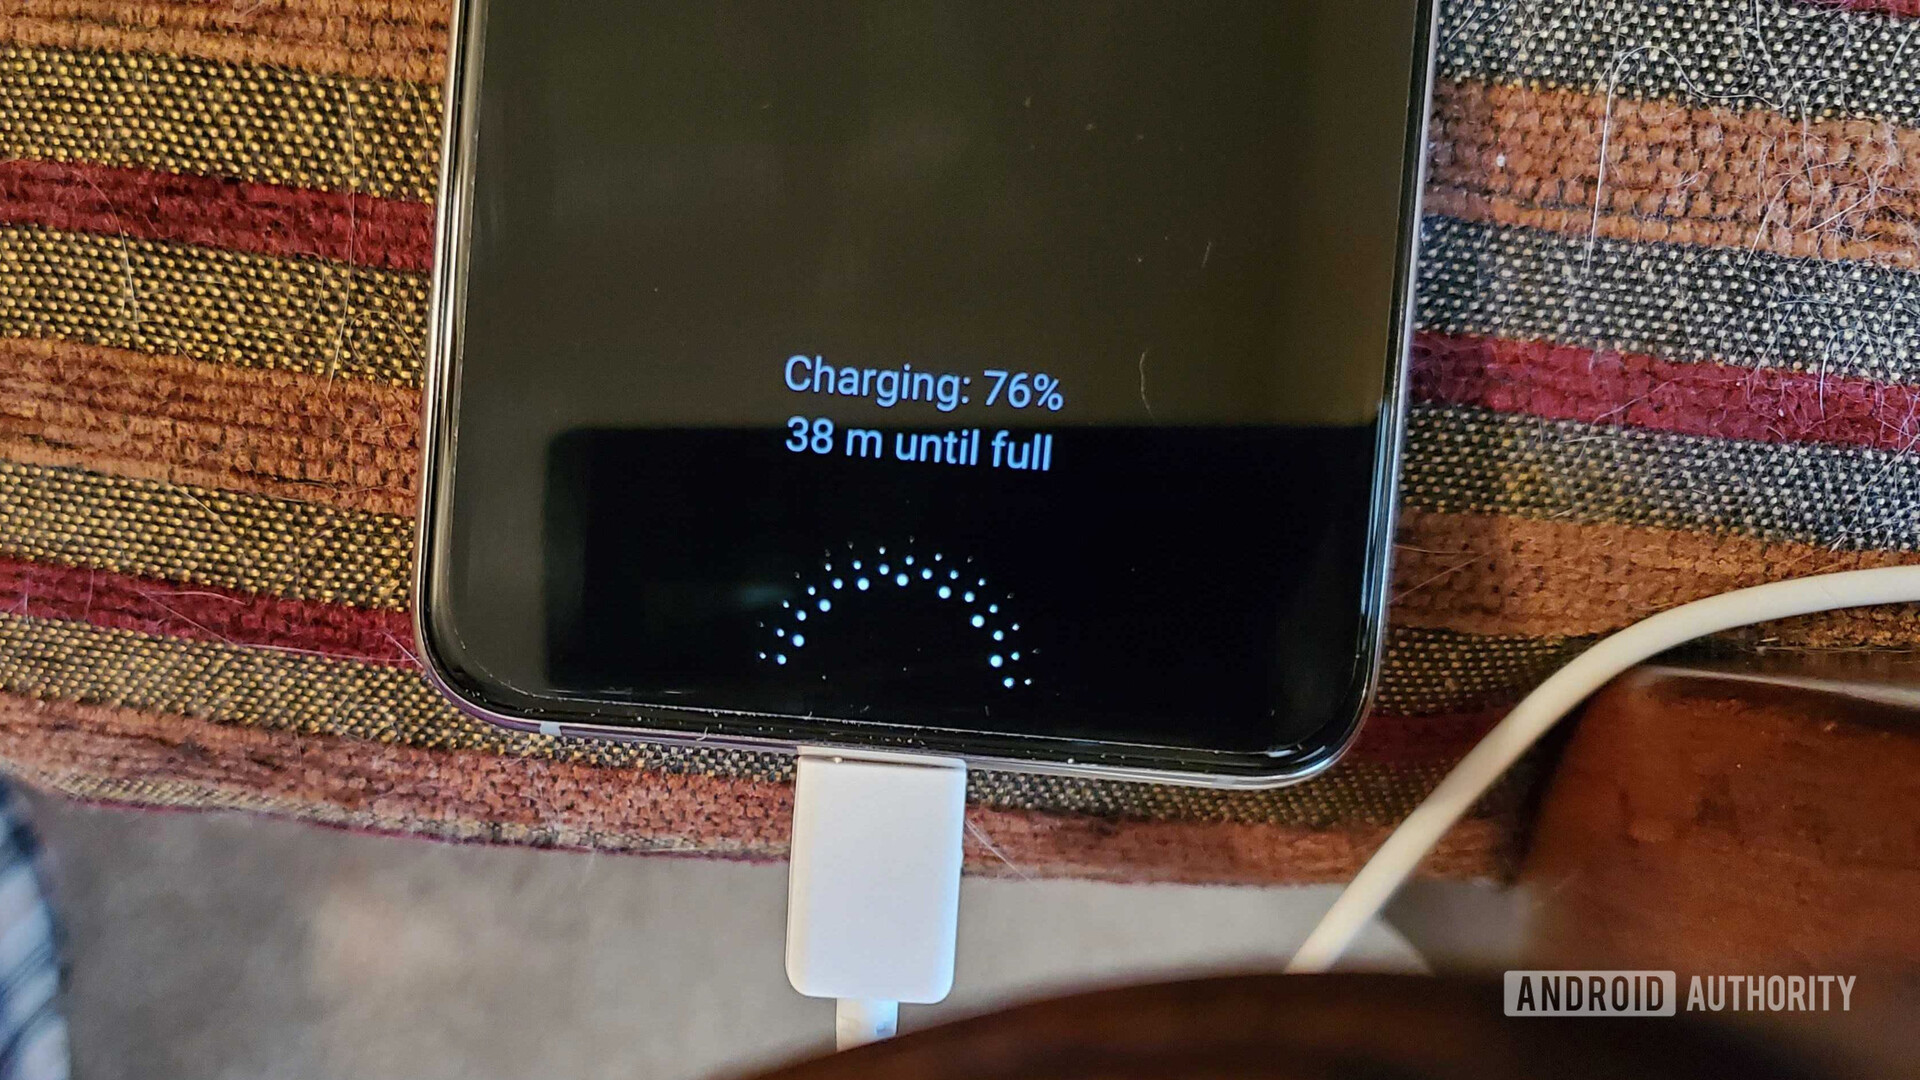 Samsung Galaxy Note 10 20,000mAh power bank charging on the sofa